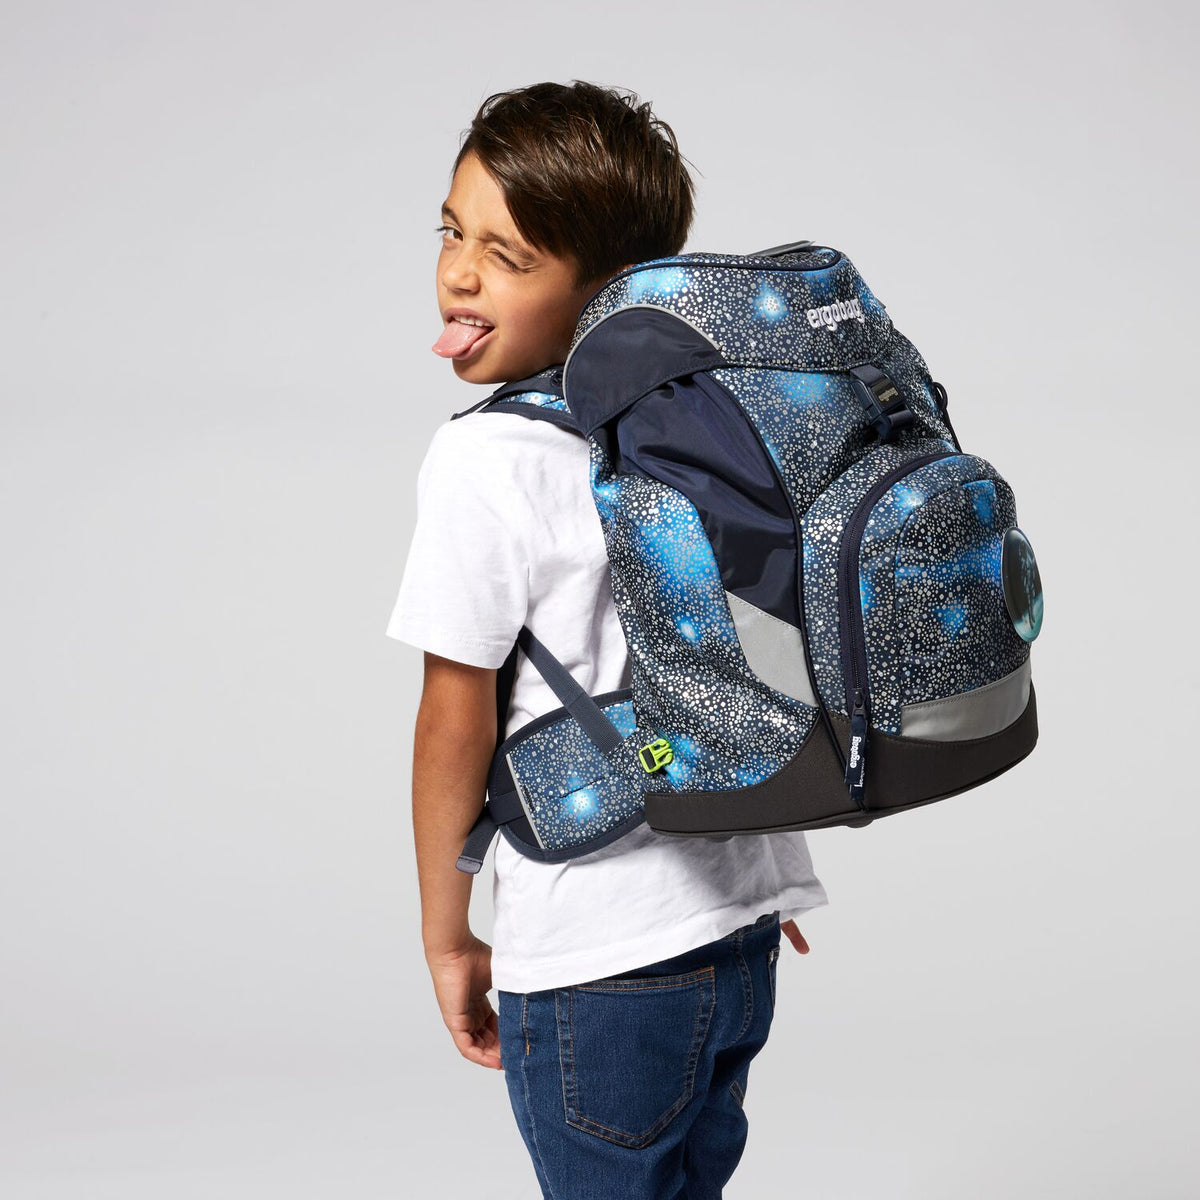 ergobag ergonomic school bag for primary 1 boys